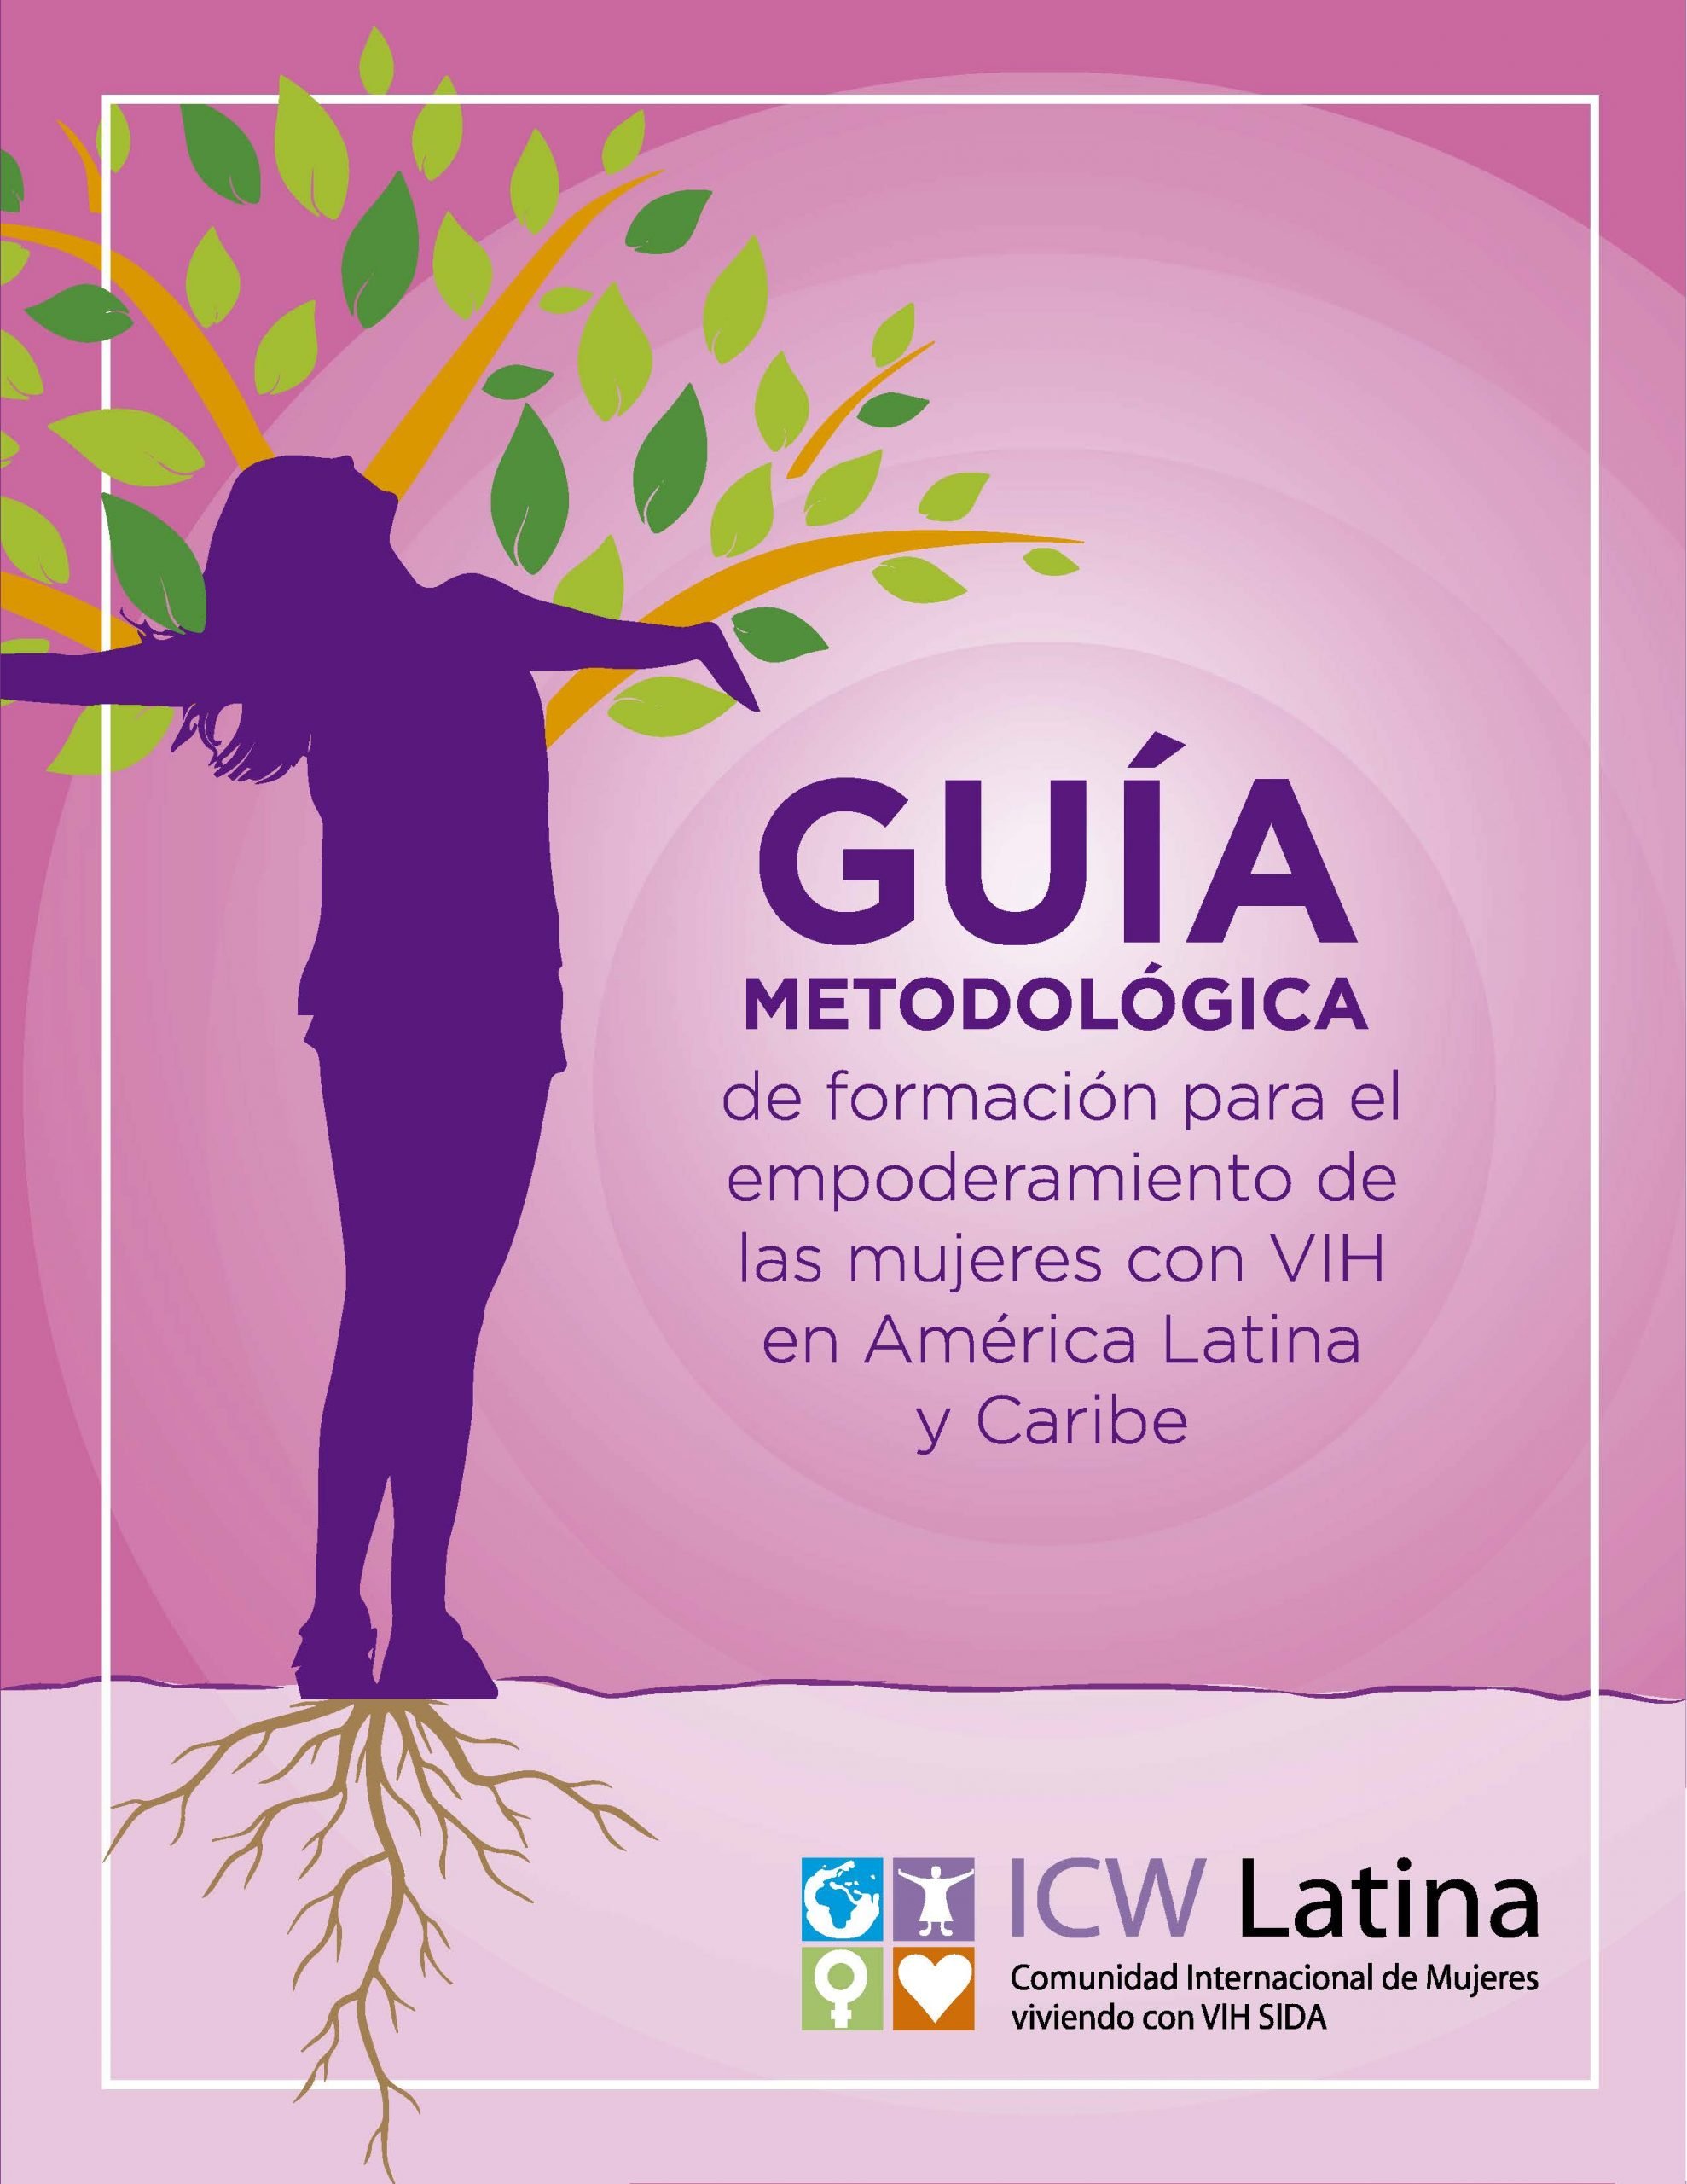 Guía Metodológica de formación para el empoderamiento de las mujeres VIH en América Latina y Caribe